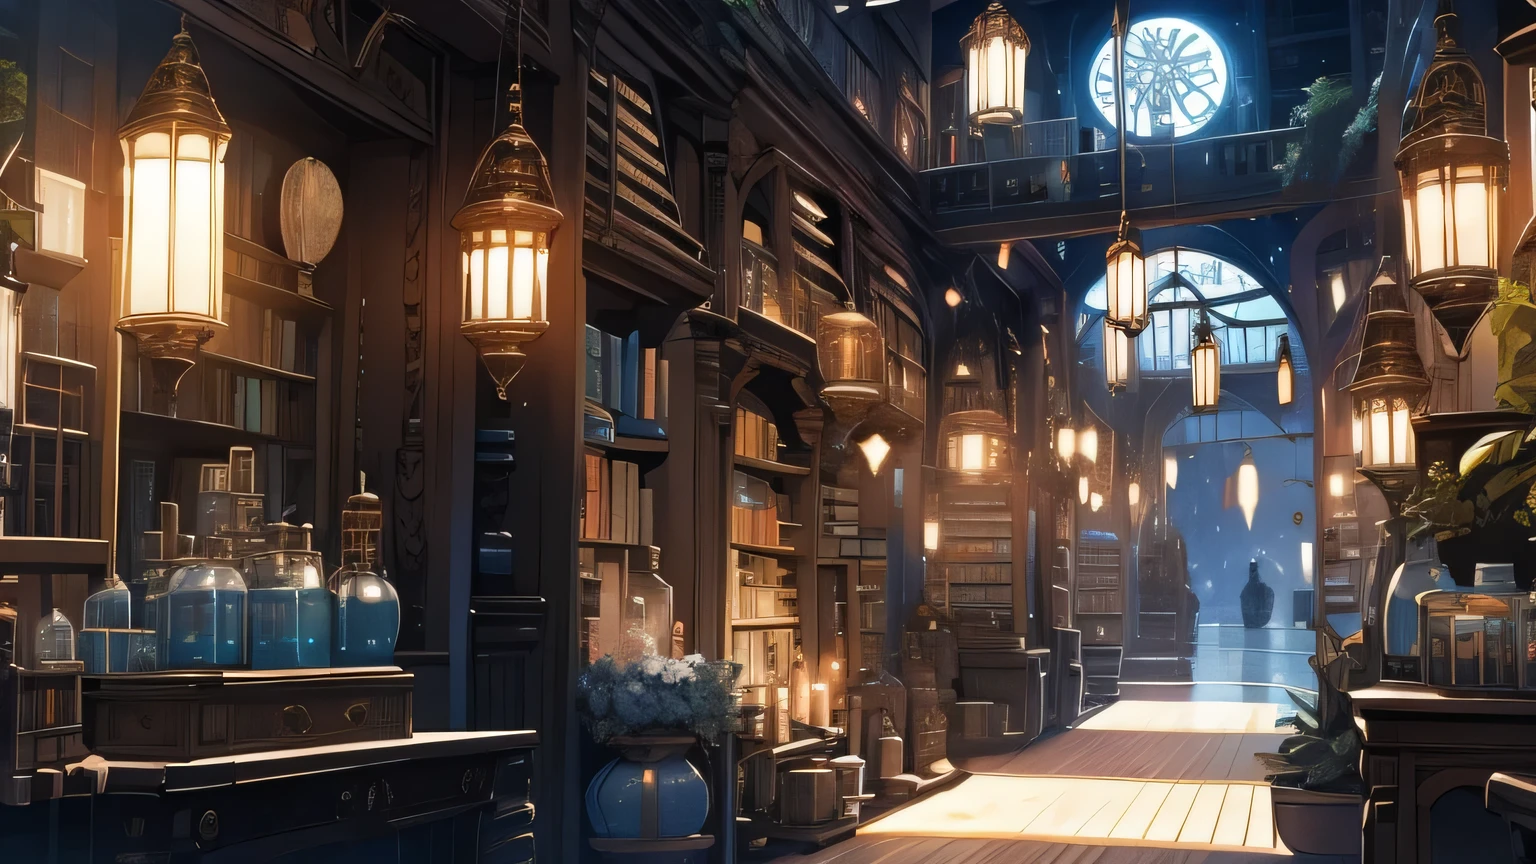 환상의 도서관 내부, 밤에는 물건이 많다, 책장, 마법 아이템, 복도